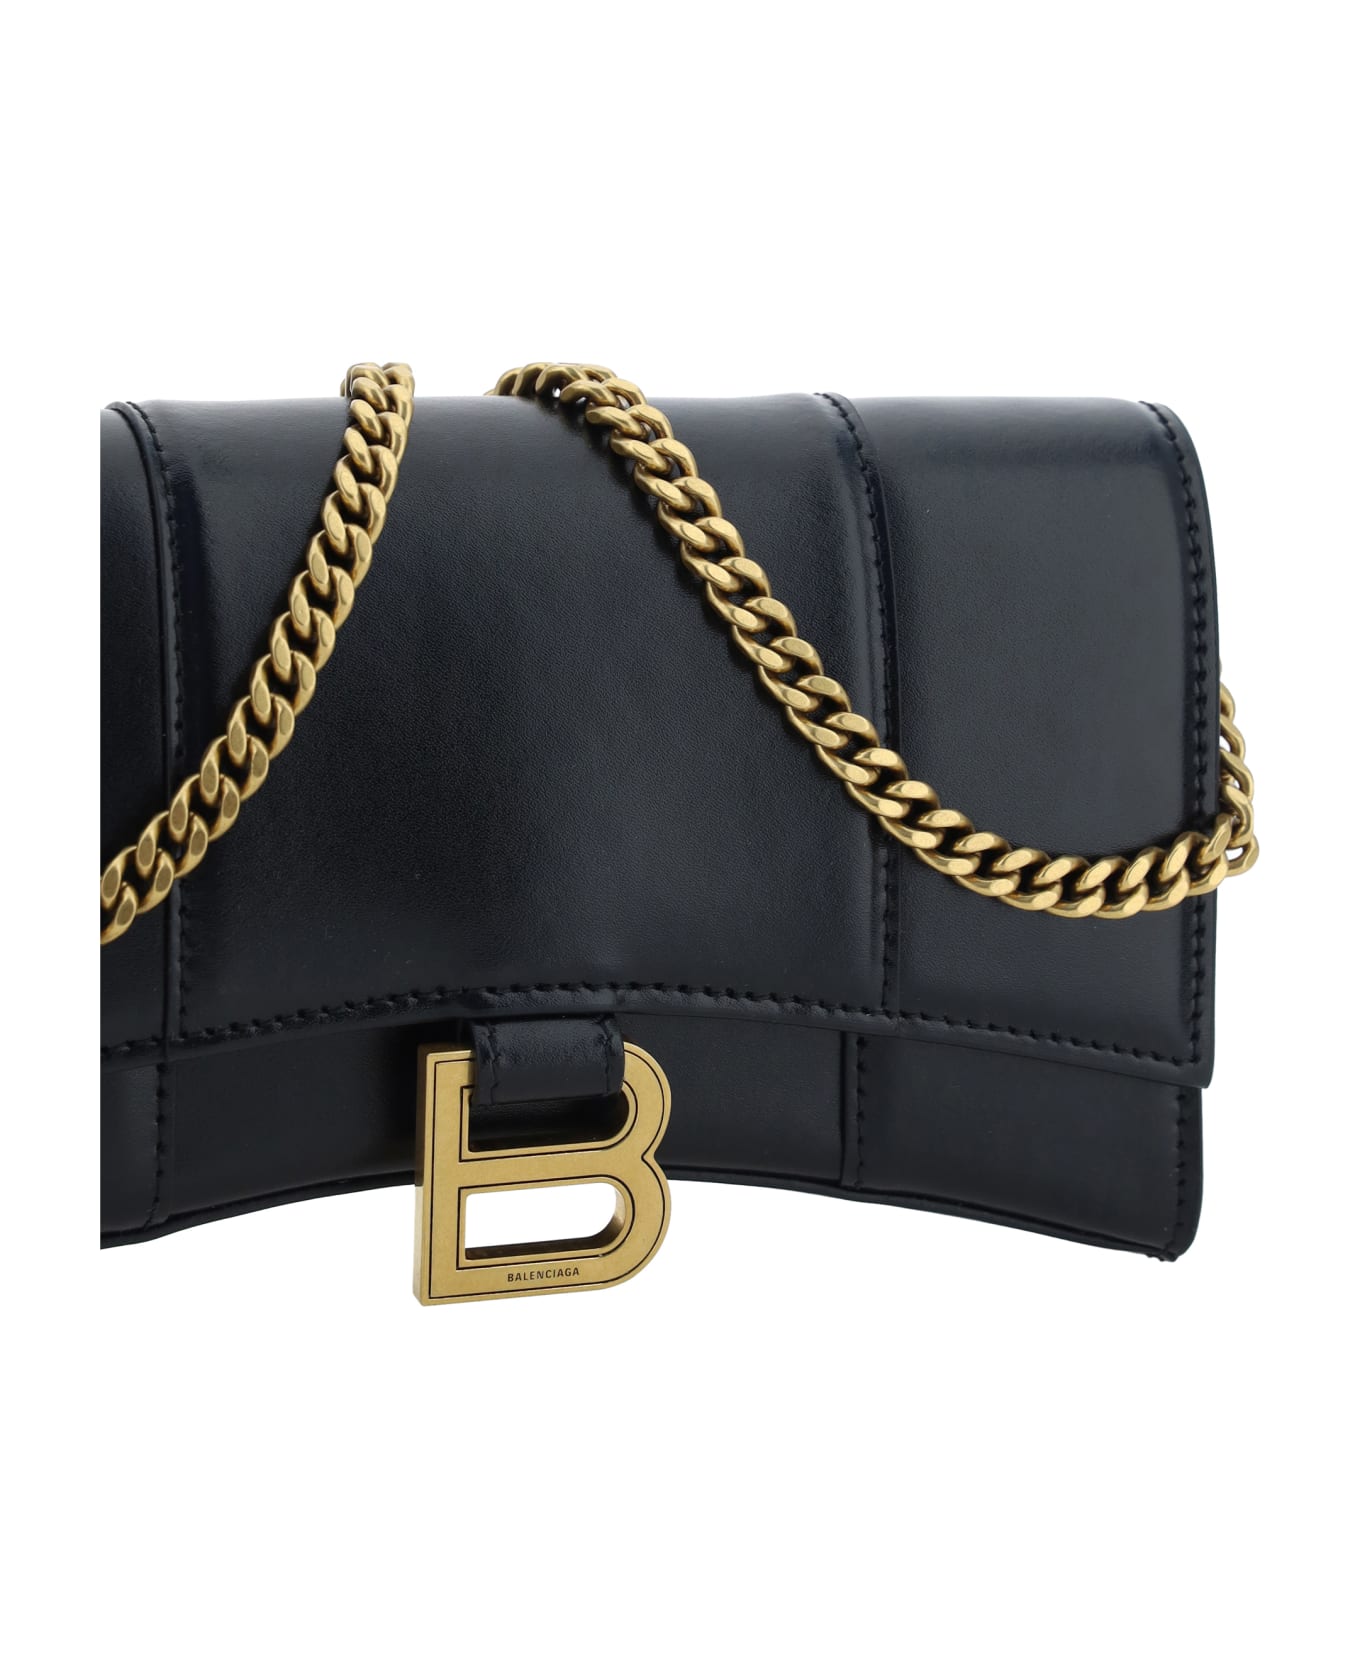 Balenciaga Hourglass Chain Wallet - Black 財布